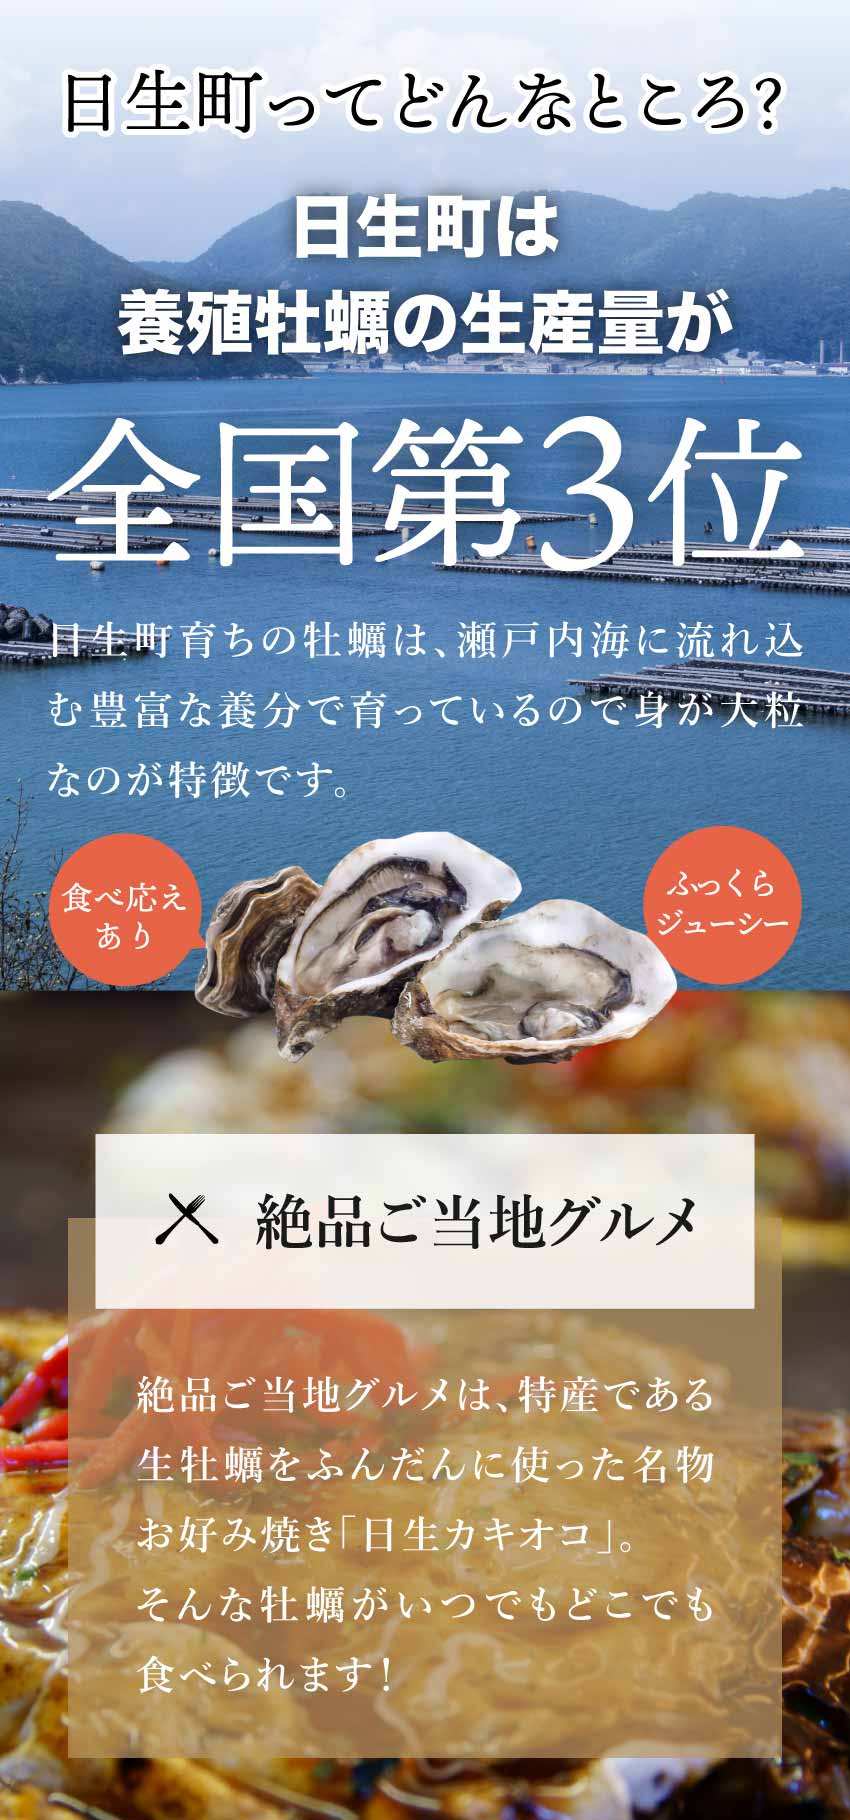 冷凍牡蠣販売・牡蠣の磯煮販売ページ7